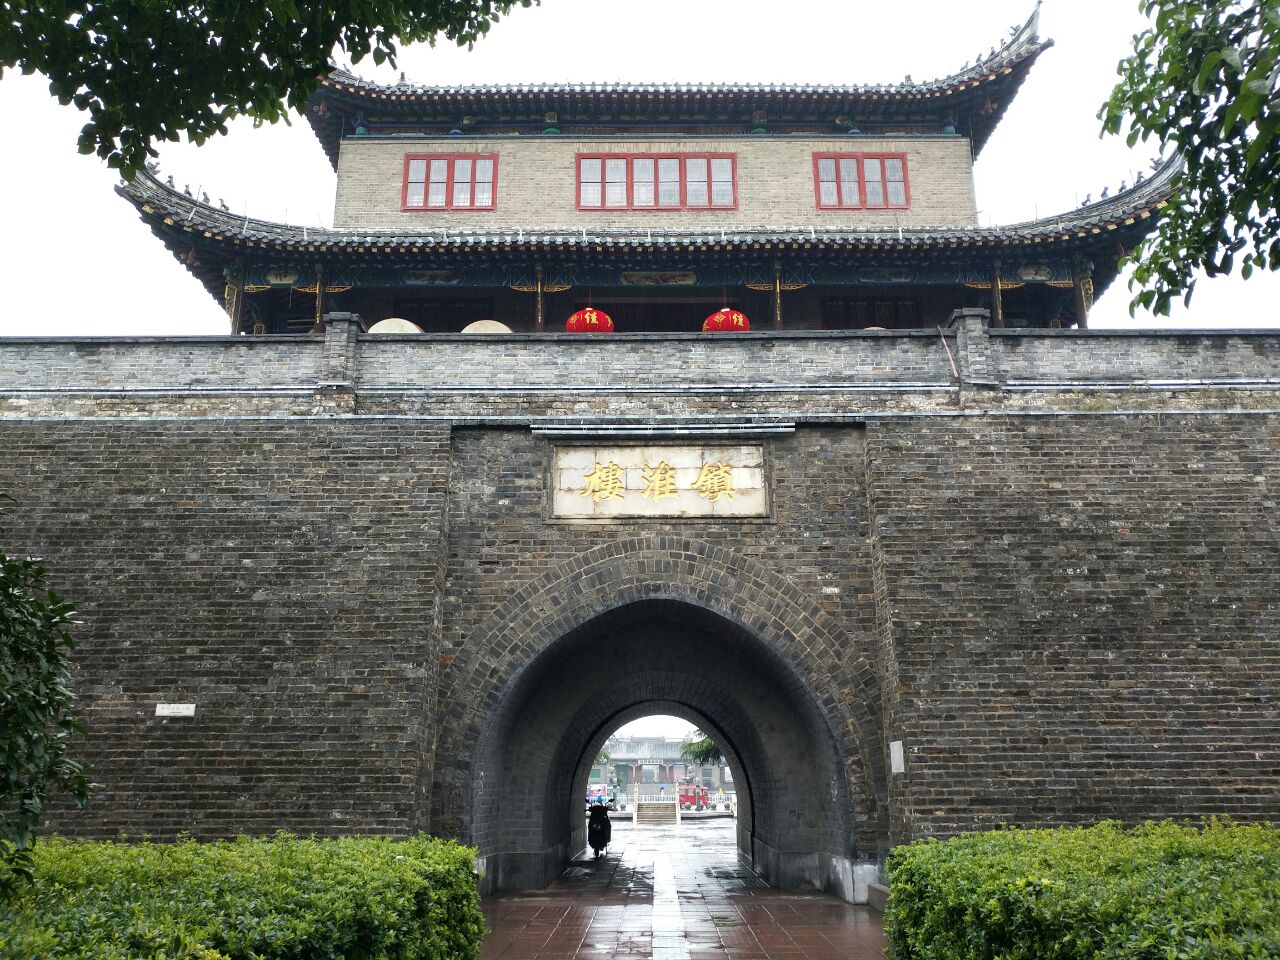 镇淮楼是淮安市旅游必去的目的地,它是淮安老城的标志性建筑.